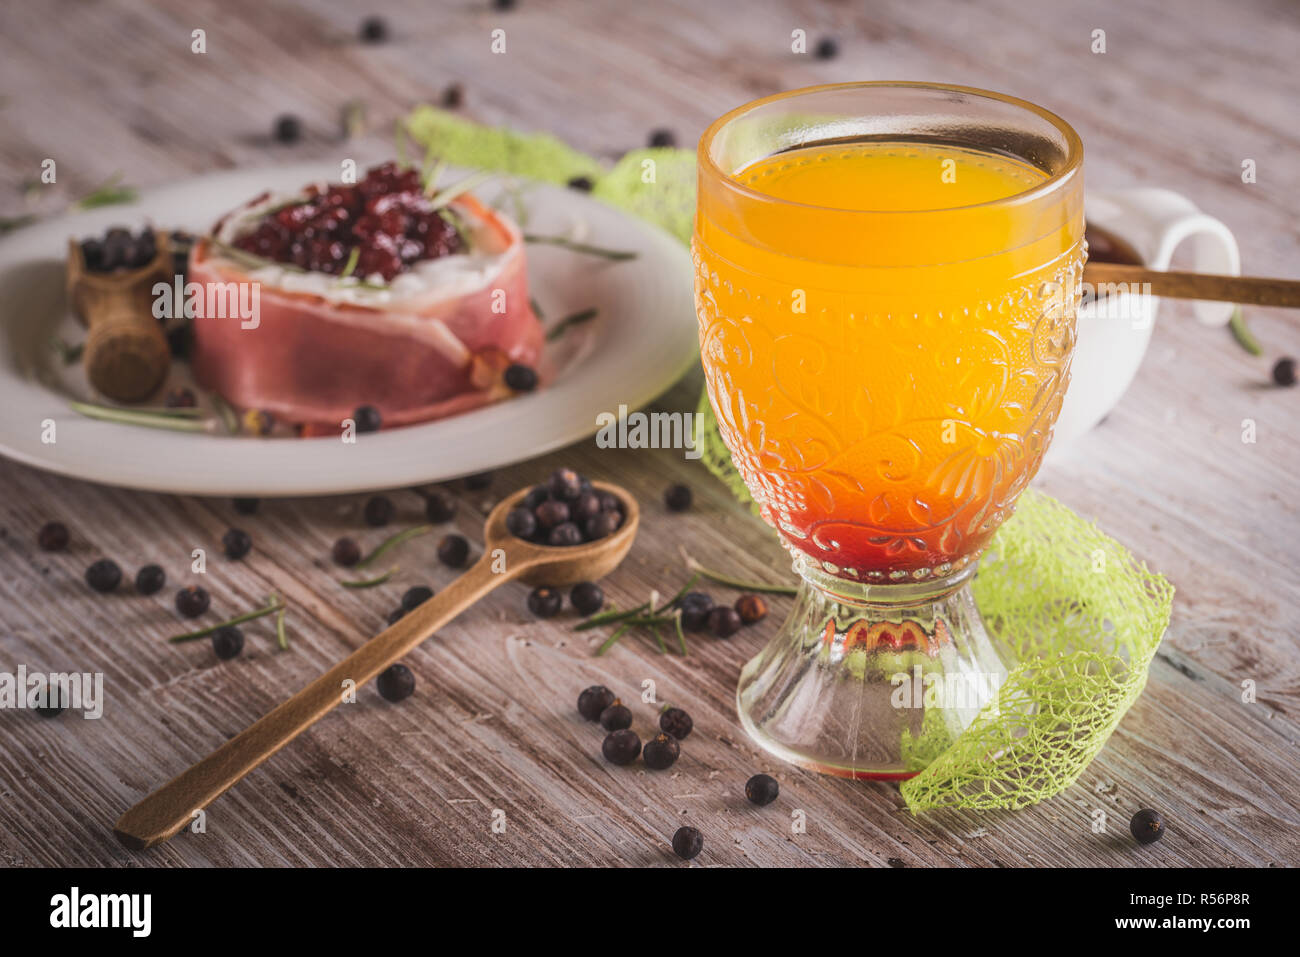 Photo horizontale du verre avec du jus d'orange qui a sirop de grenadine rouge en bas. Fromage enveloppé dans du jambon sec avec des canneberges sur le dessus est en verre avec o Banque D'Images